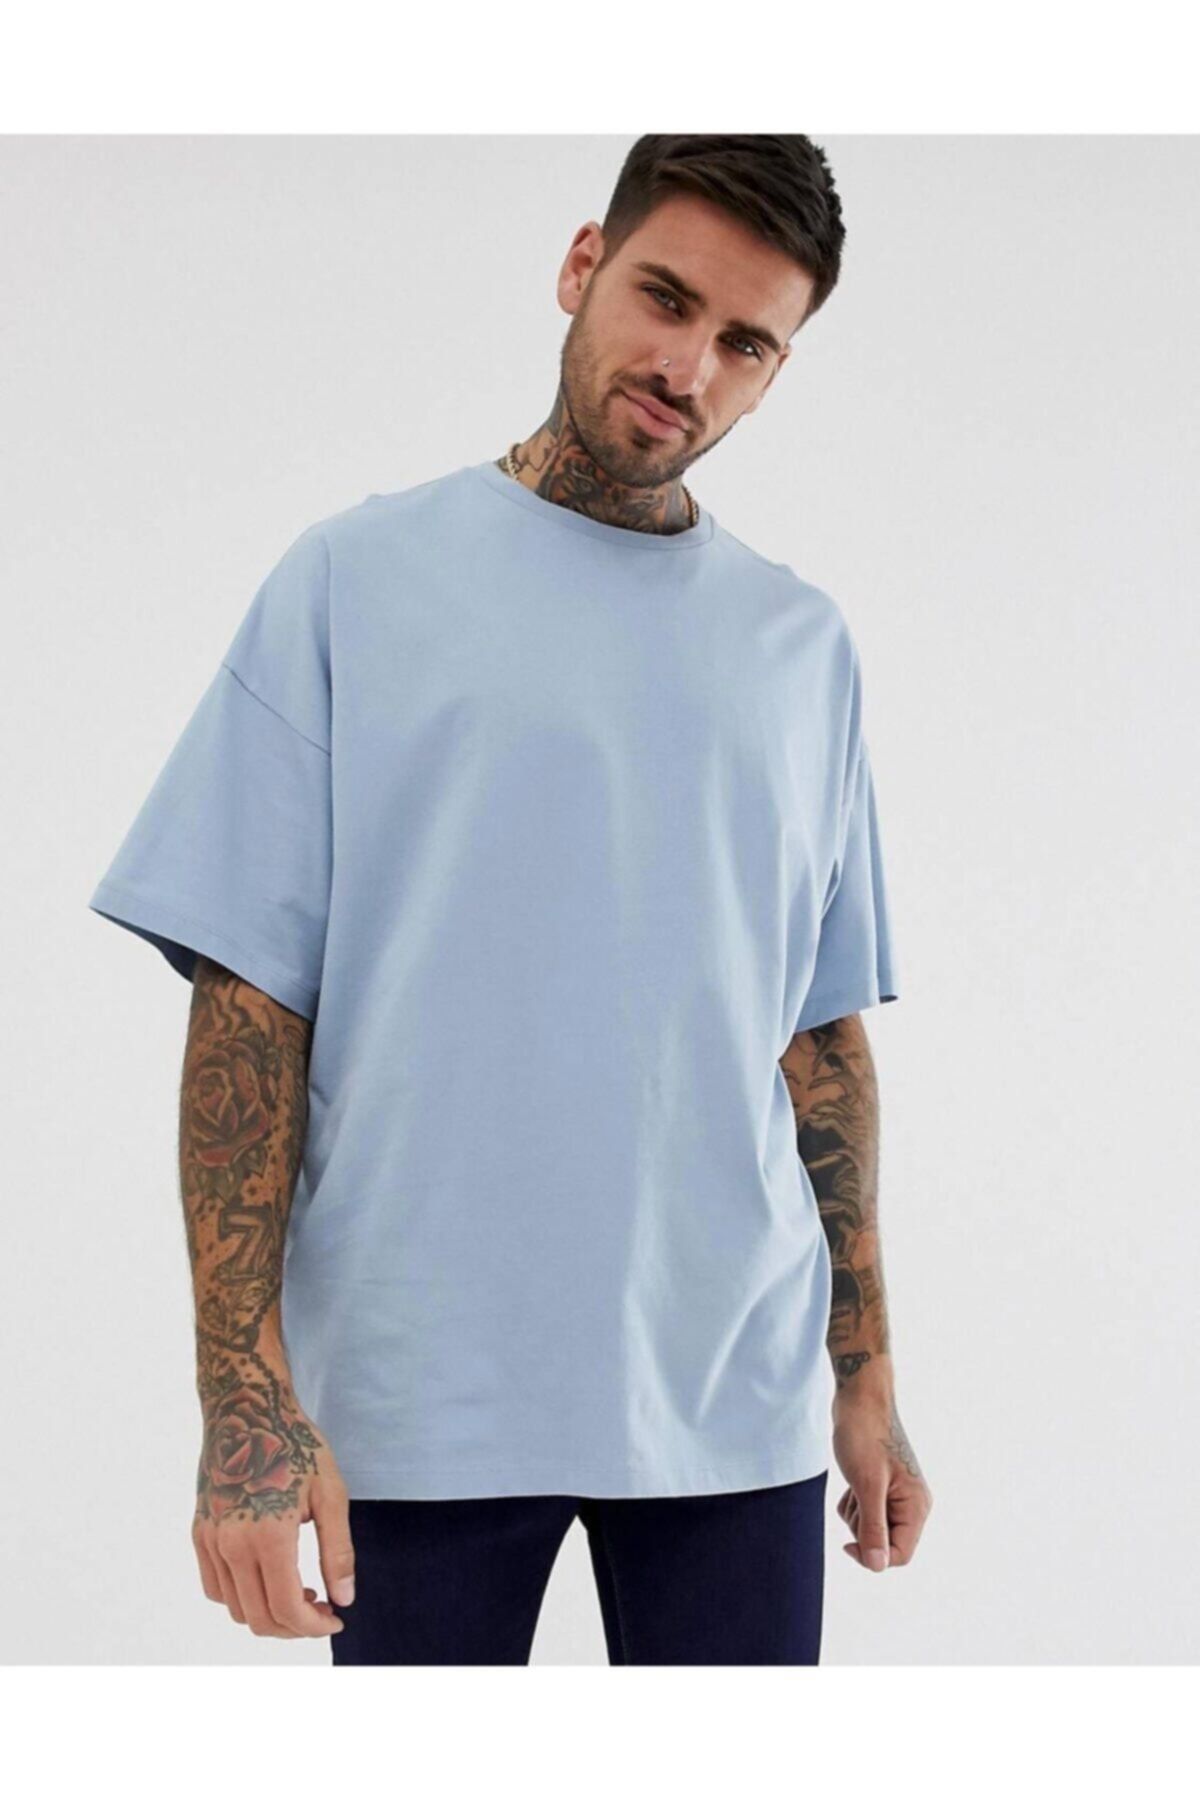 LEYEL Moda Unisex Oversize Bebek Mavisi Geniş Kalıp Tshirt